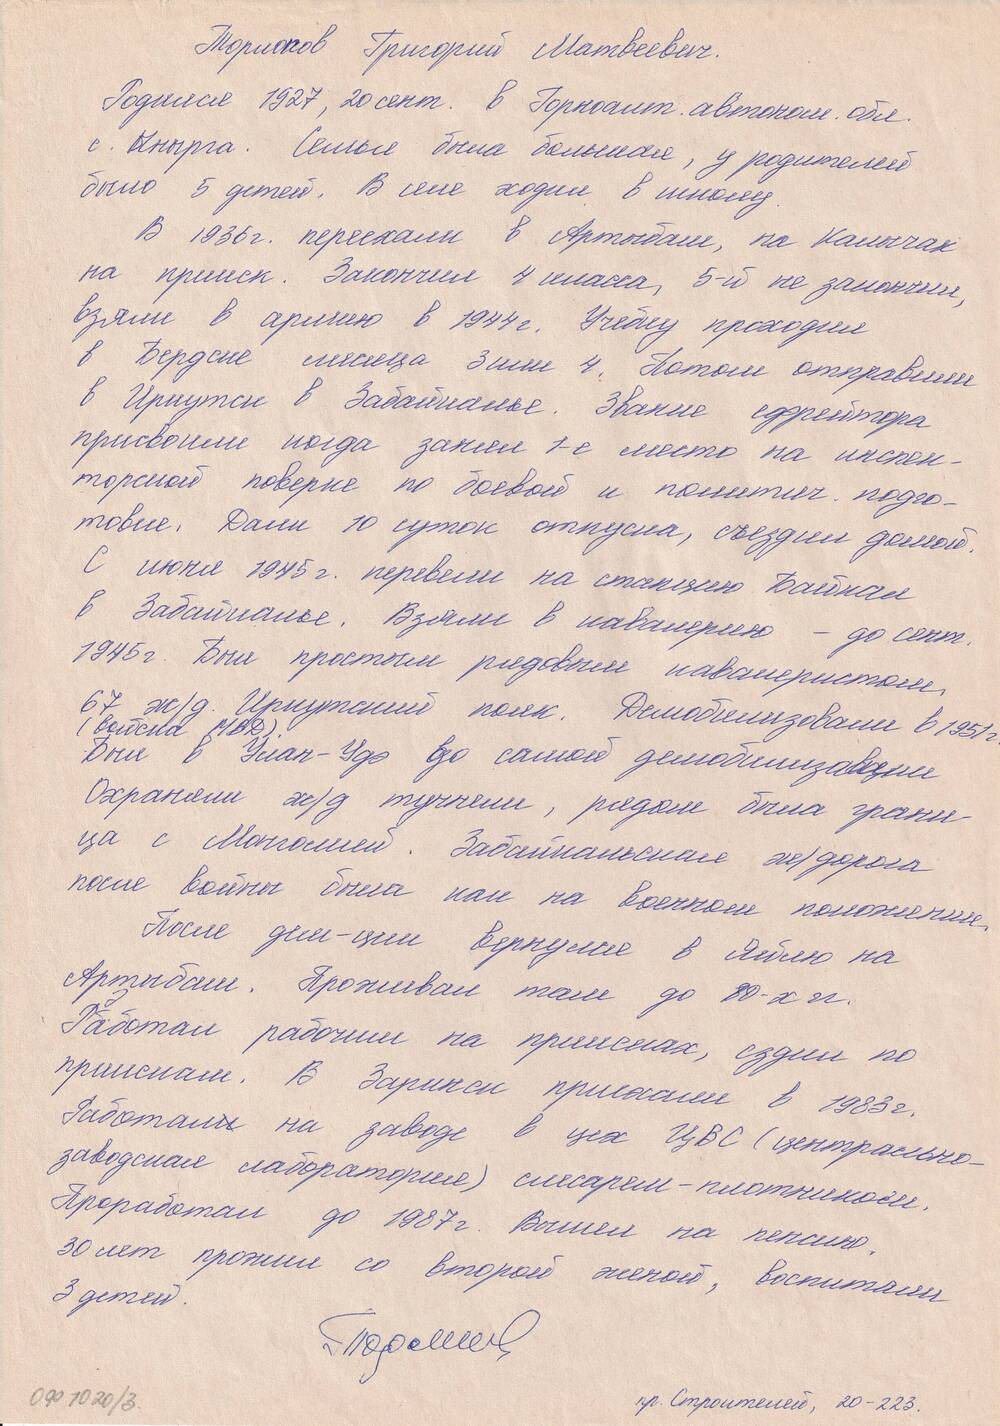 Краткая биография Торлопова Григория Матвеевича, участника Великой Отечественной войны.